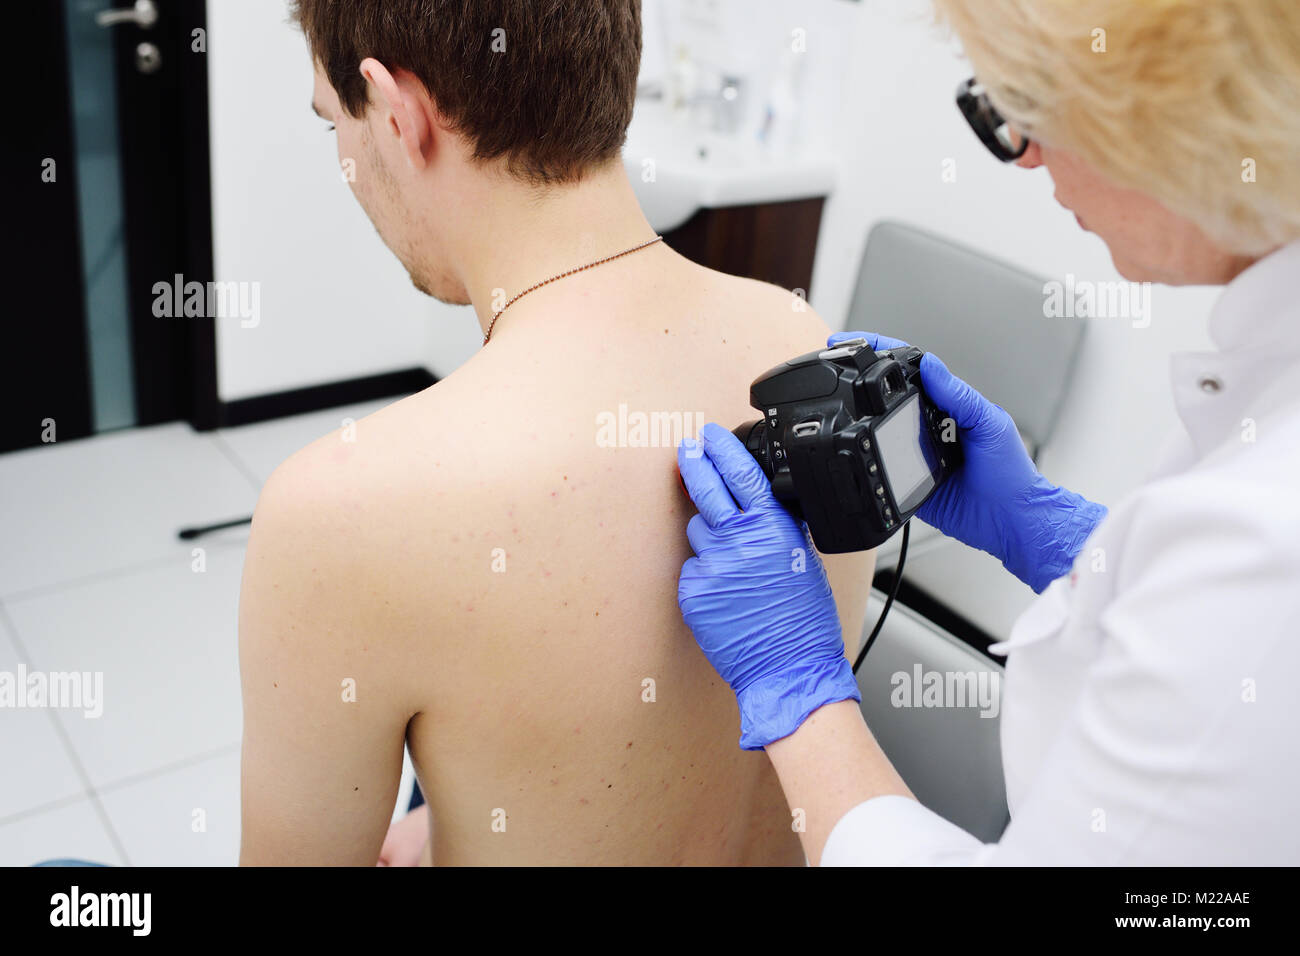 Il medico dermatologo esamina e birthmarks birthmarks del paziente con un dermatoscope Foto Stock